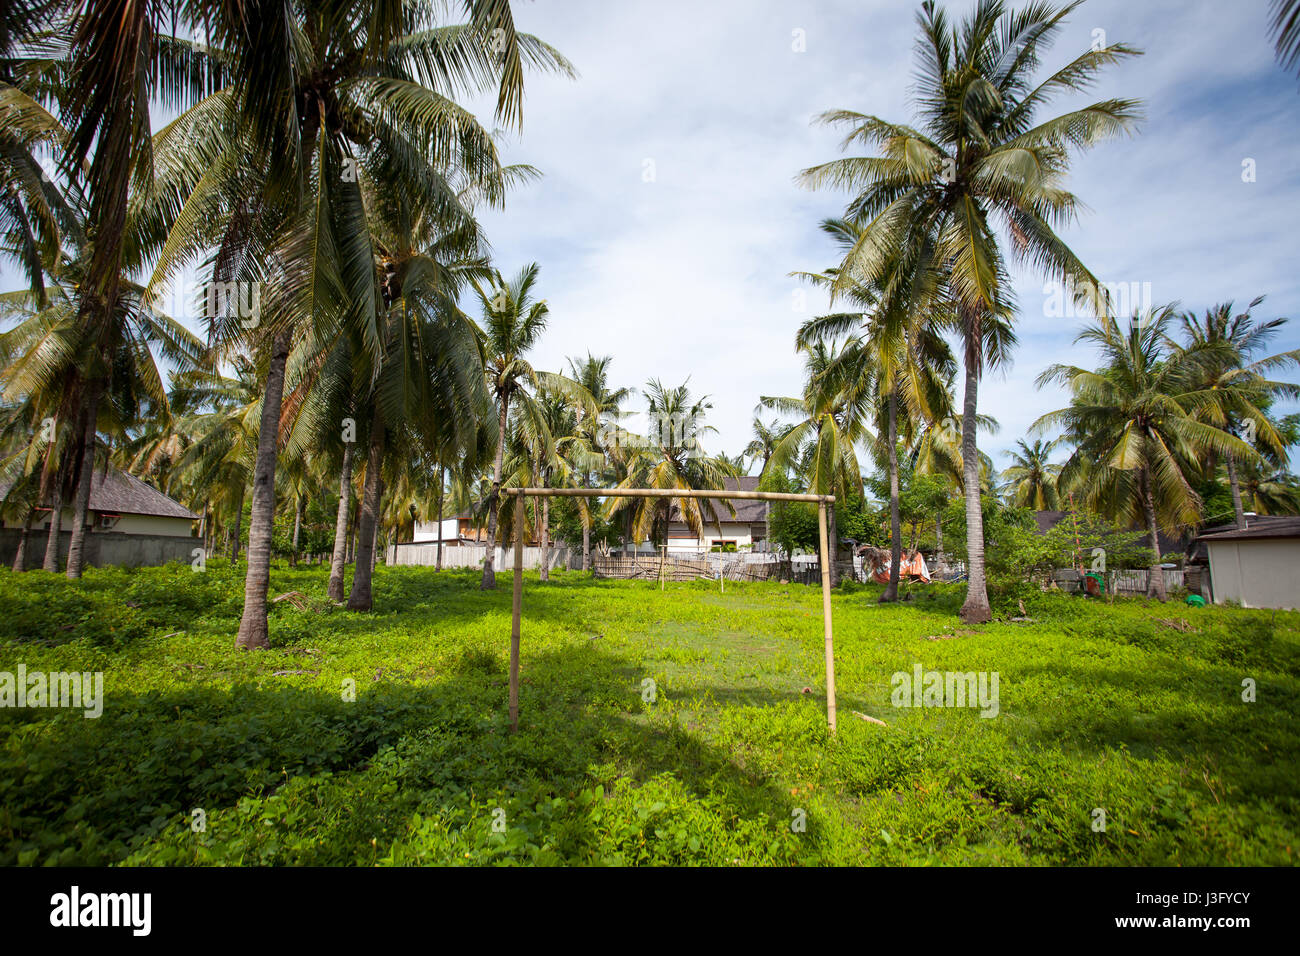 Aire de jeux - terrain de football dans la cour au milieu de palmiers et de maisons dans un pays tropical Banque D'Images